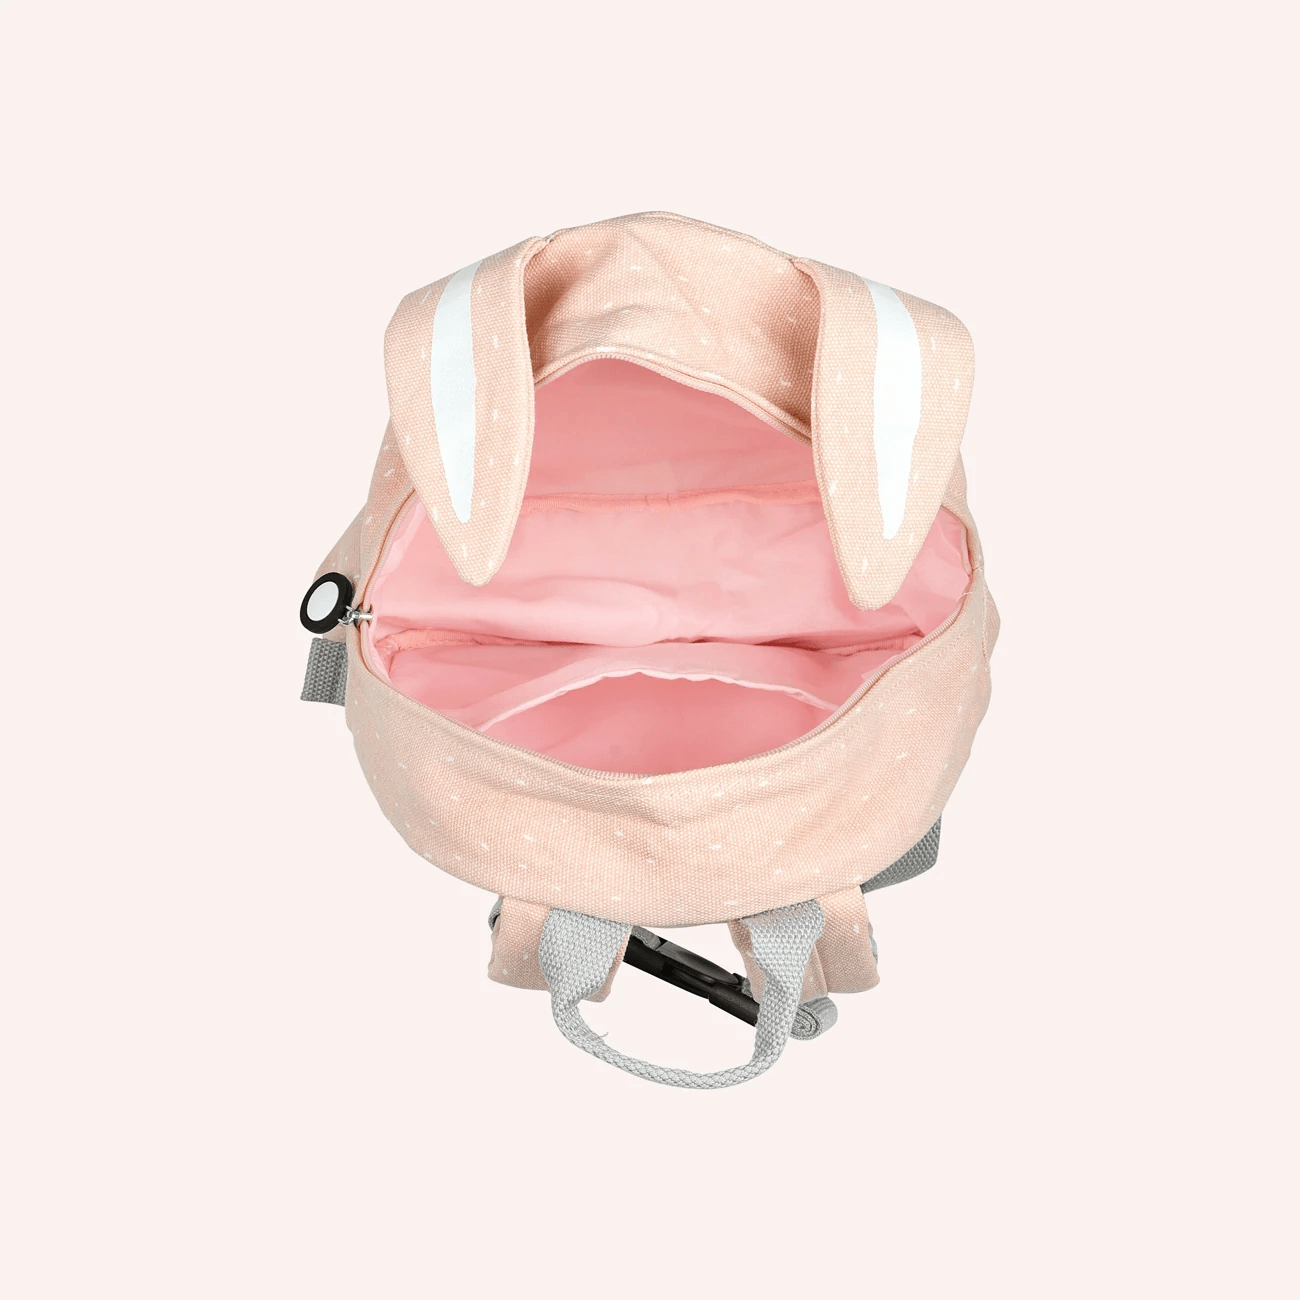 Backpack - Mrs. Rabbit